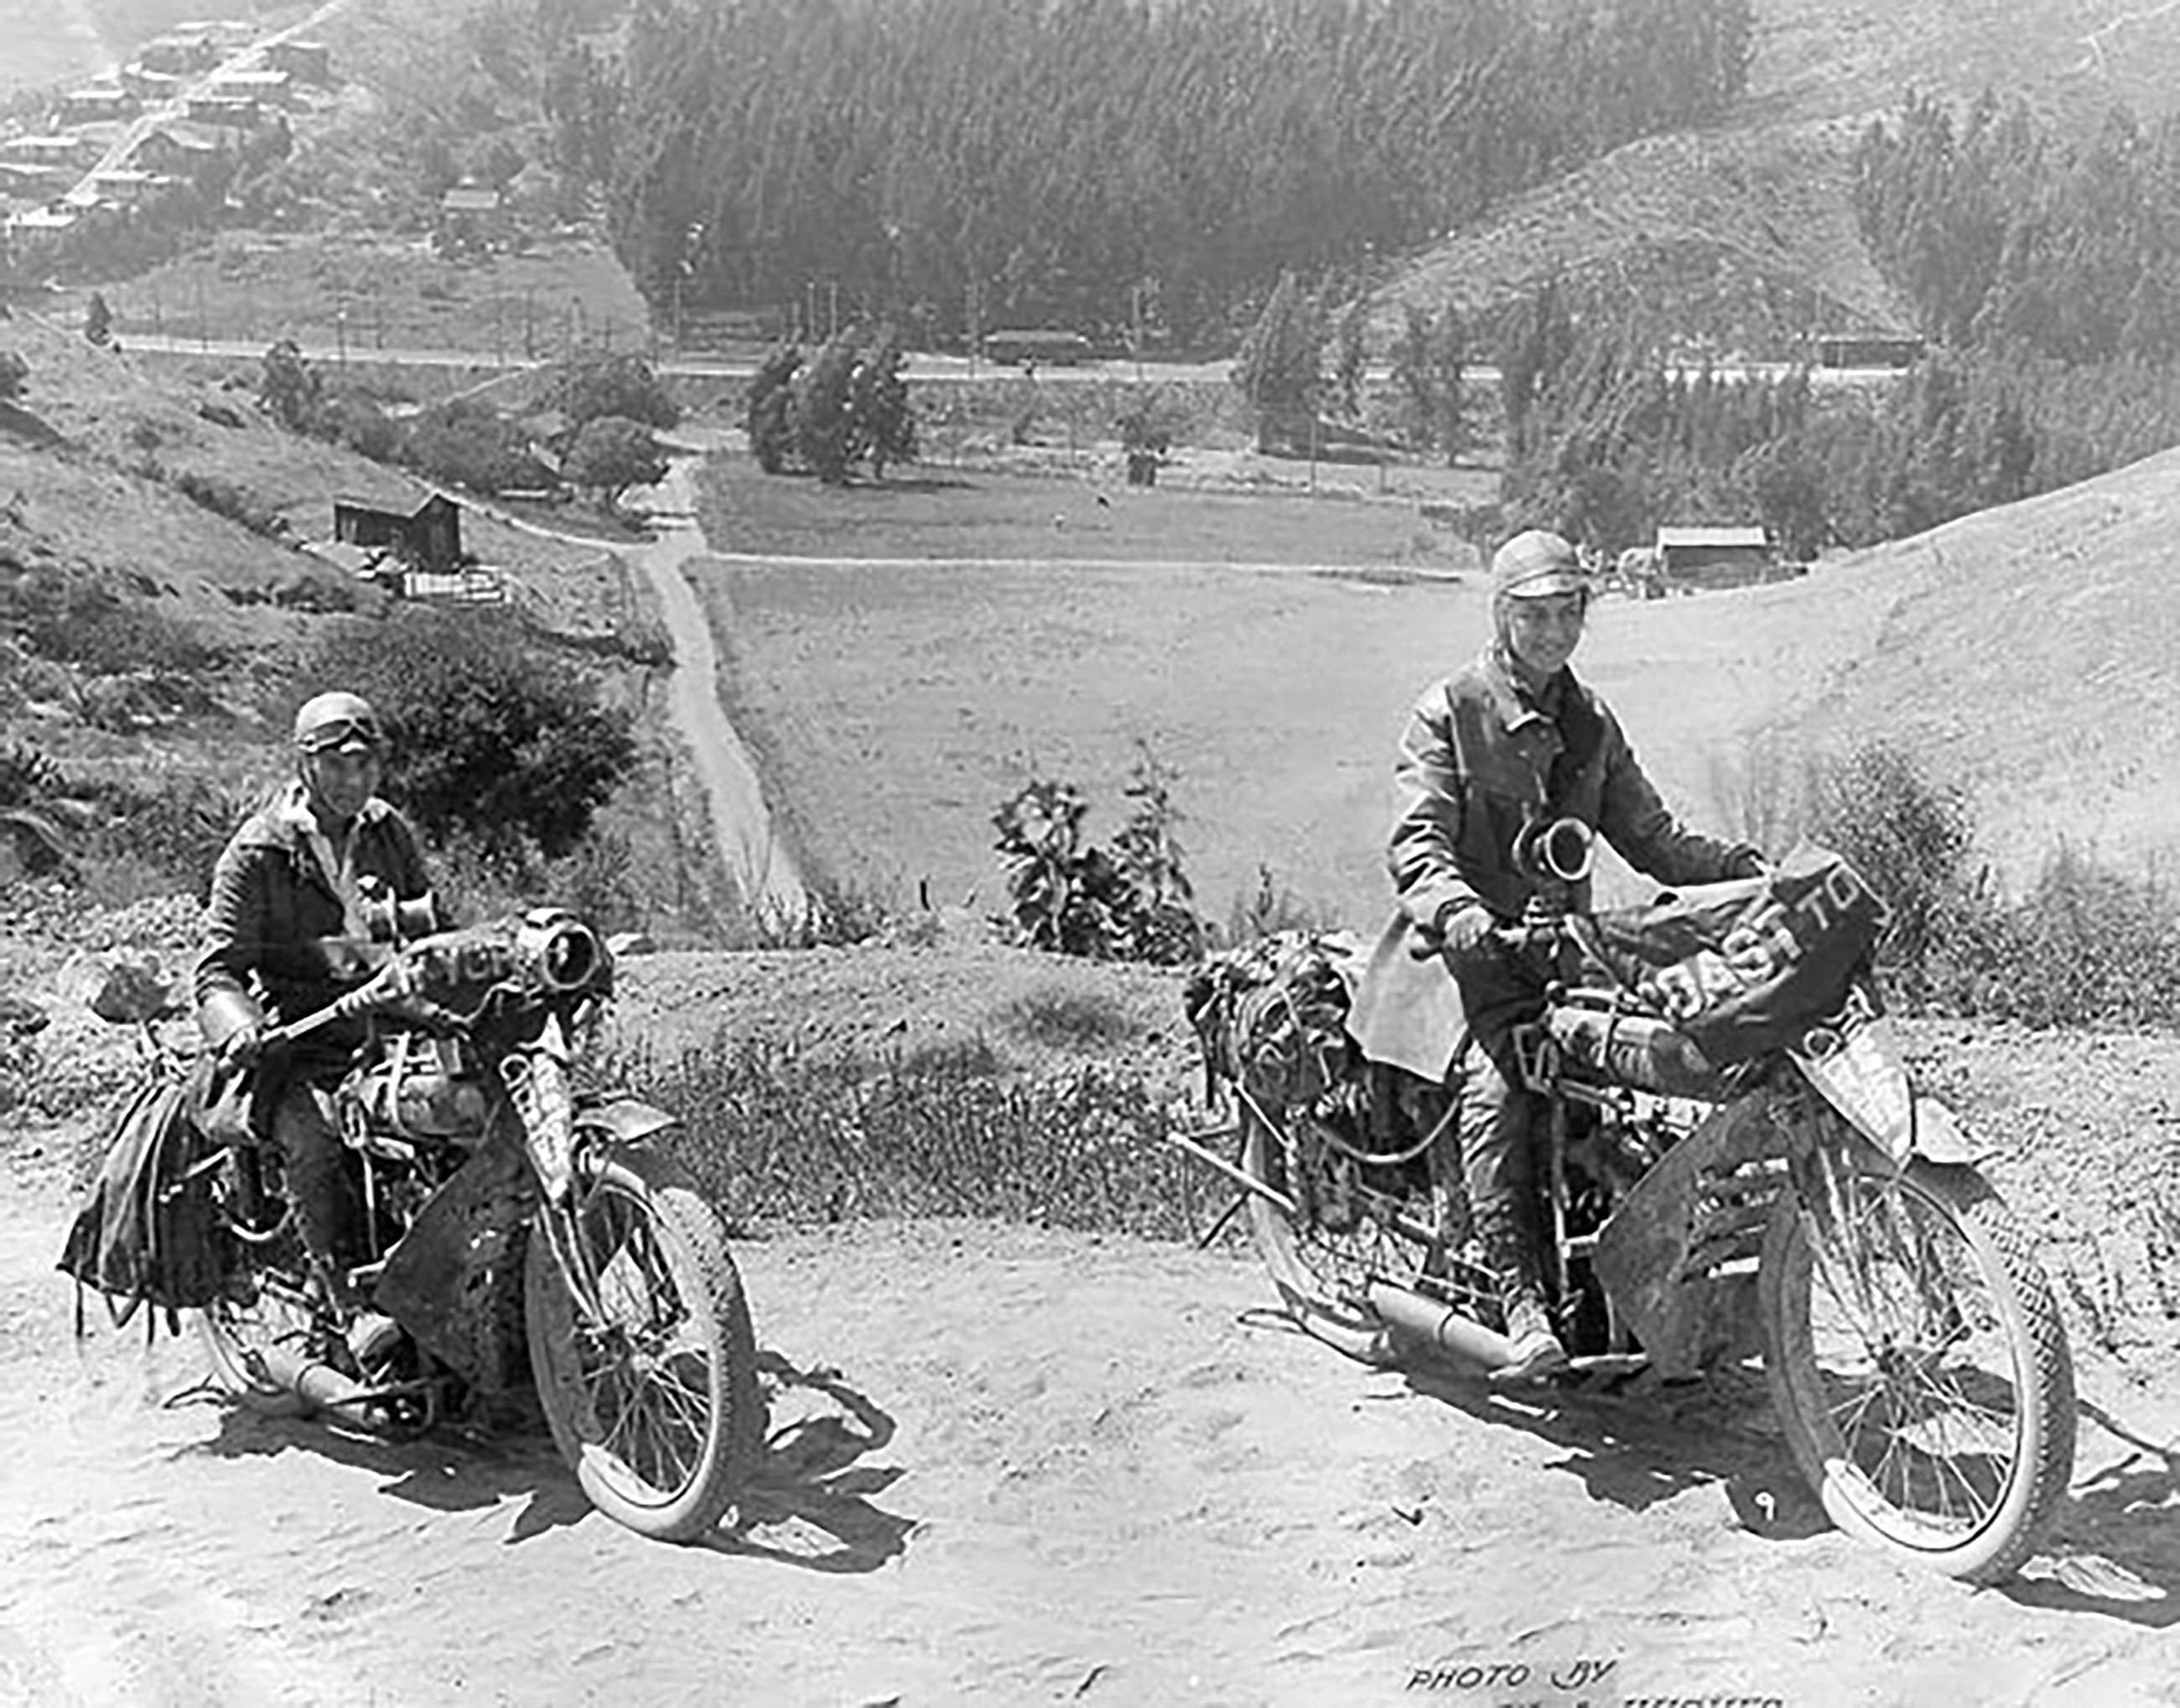 pioneering-female-motorcyclists-augusta-van-buren-adeline-van-buren-goodwood-13042021.jpg